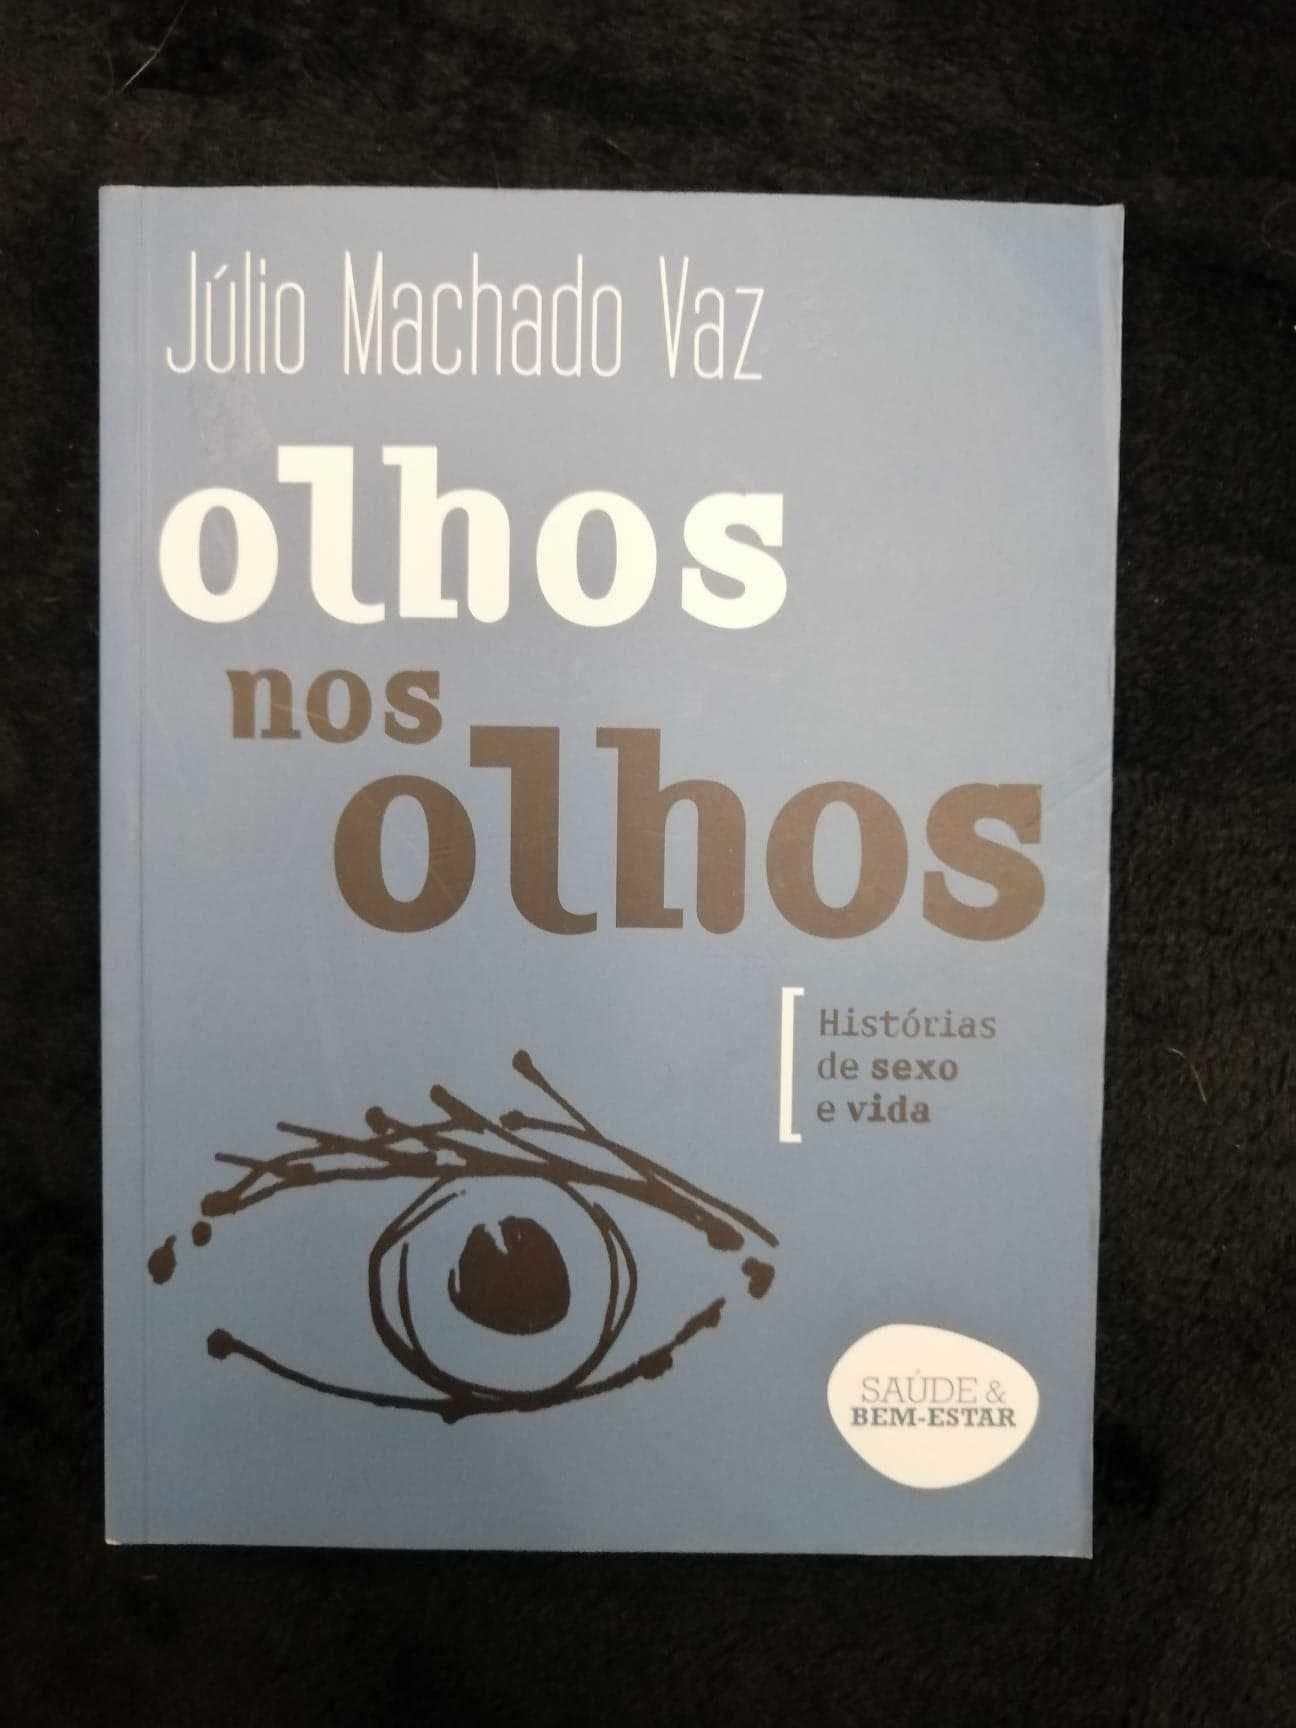 Livro "Olhos nos olhos" de Júlio Machado Vaz - bom estado